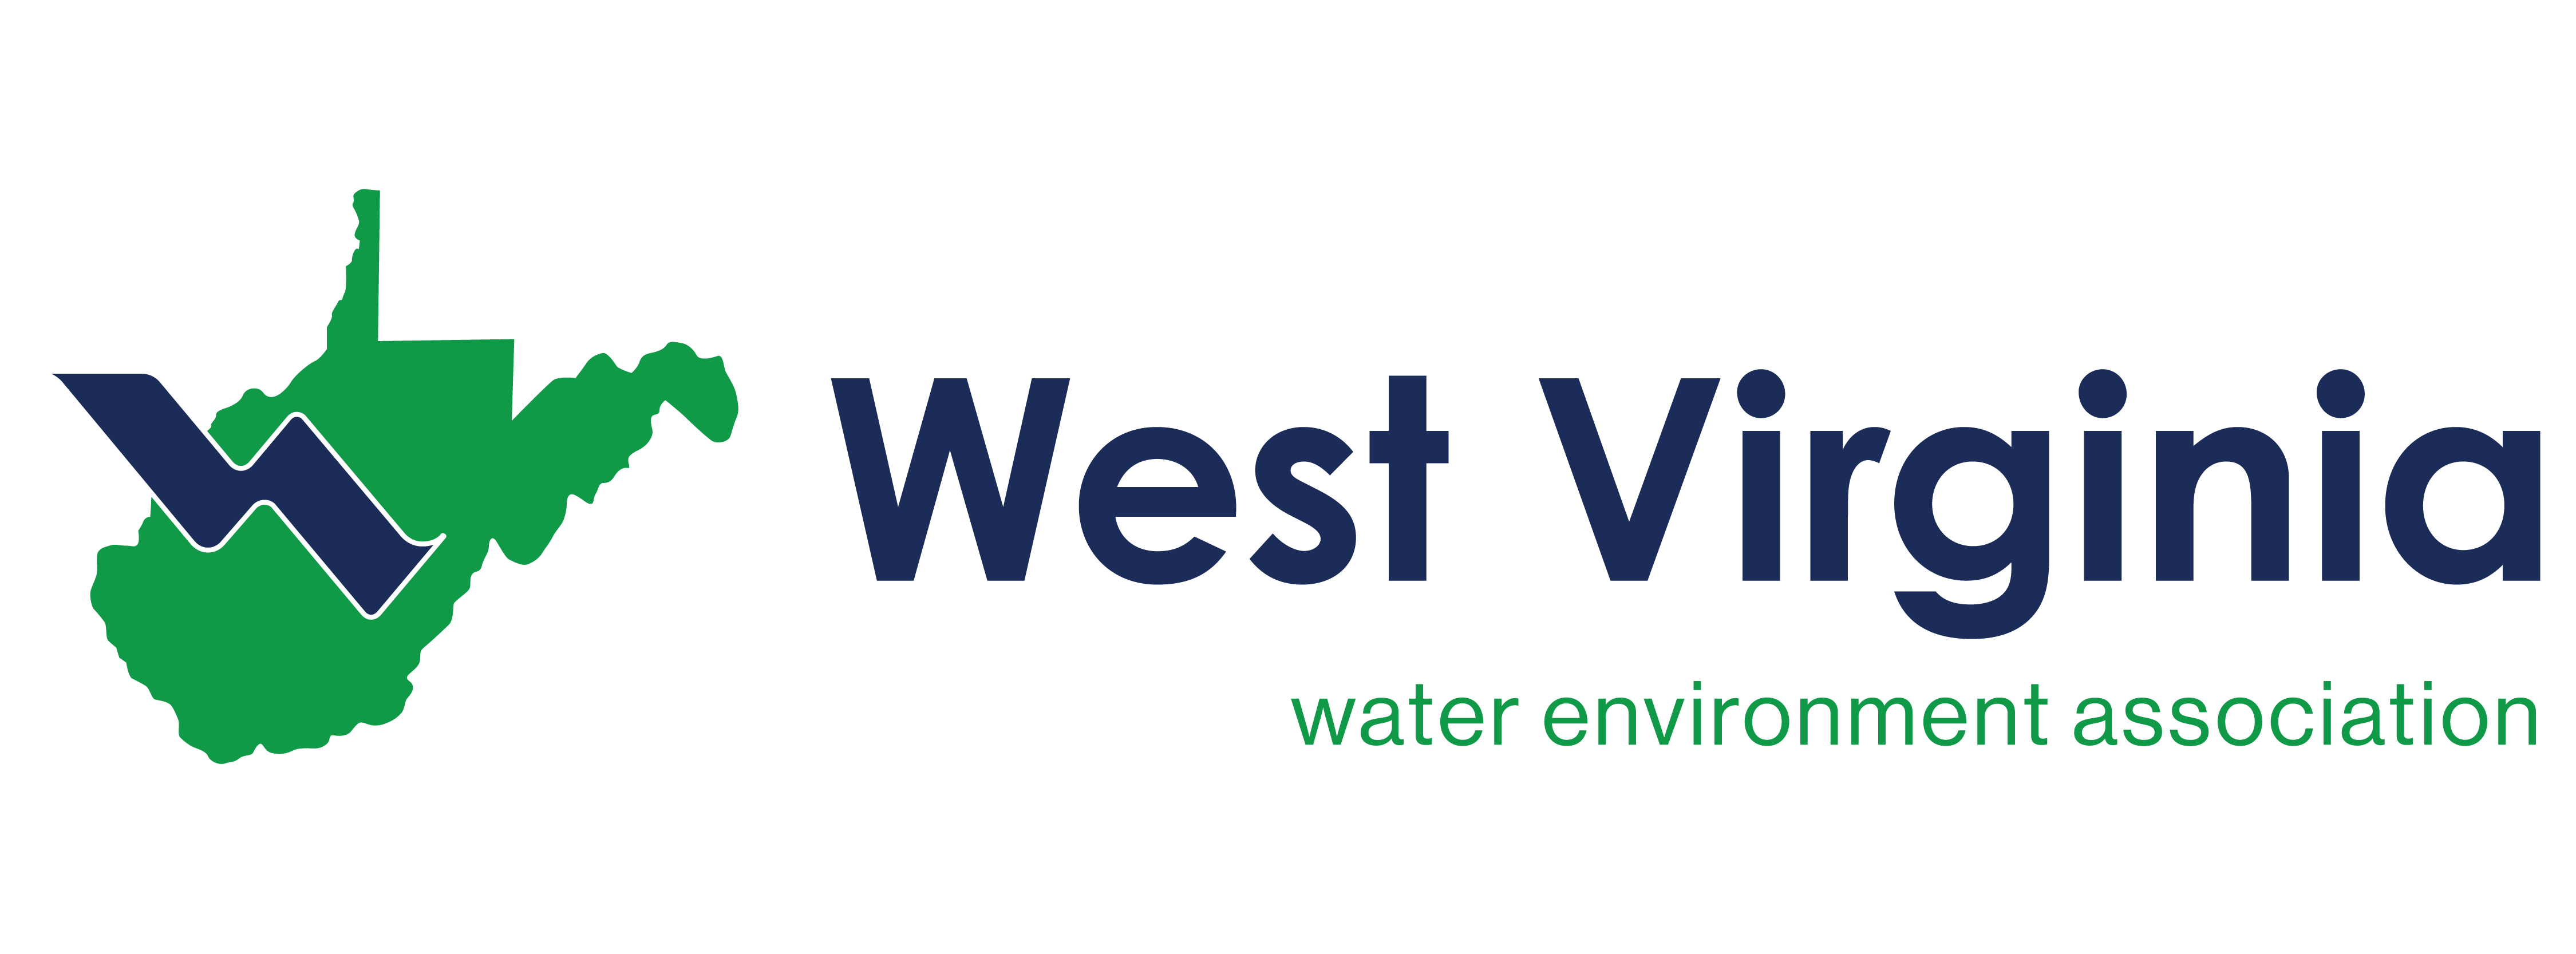 West Virginia Water Environment Association